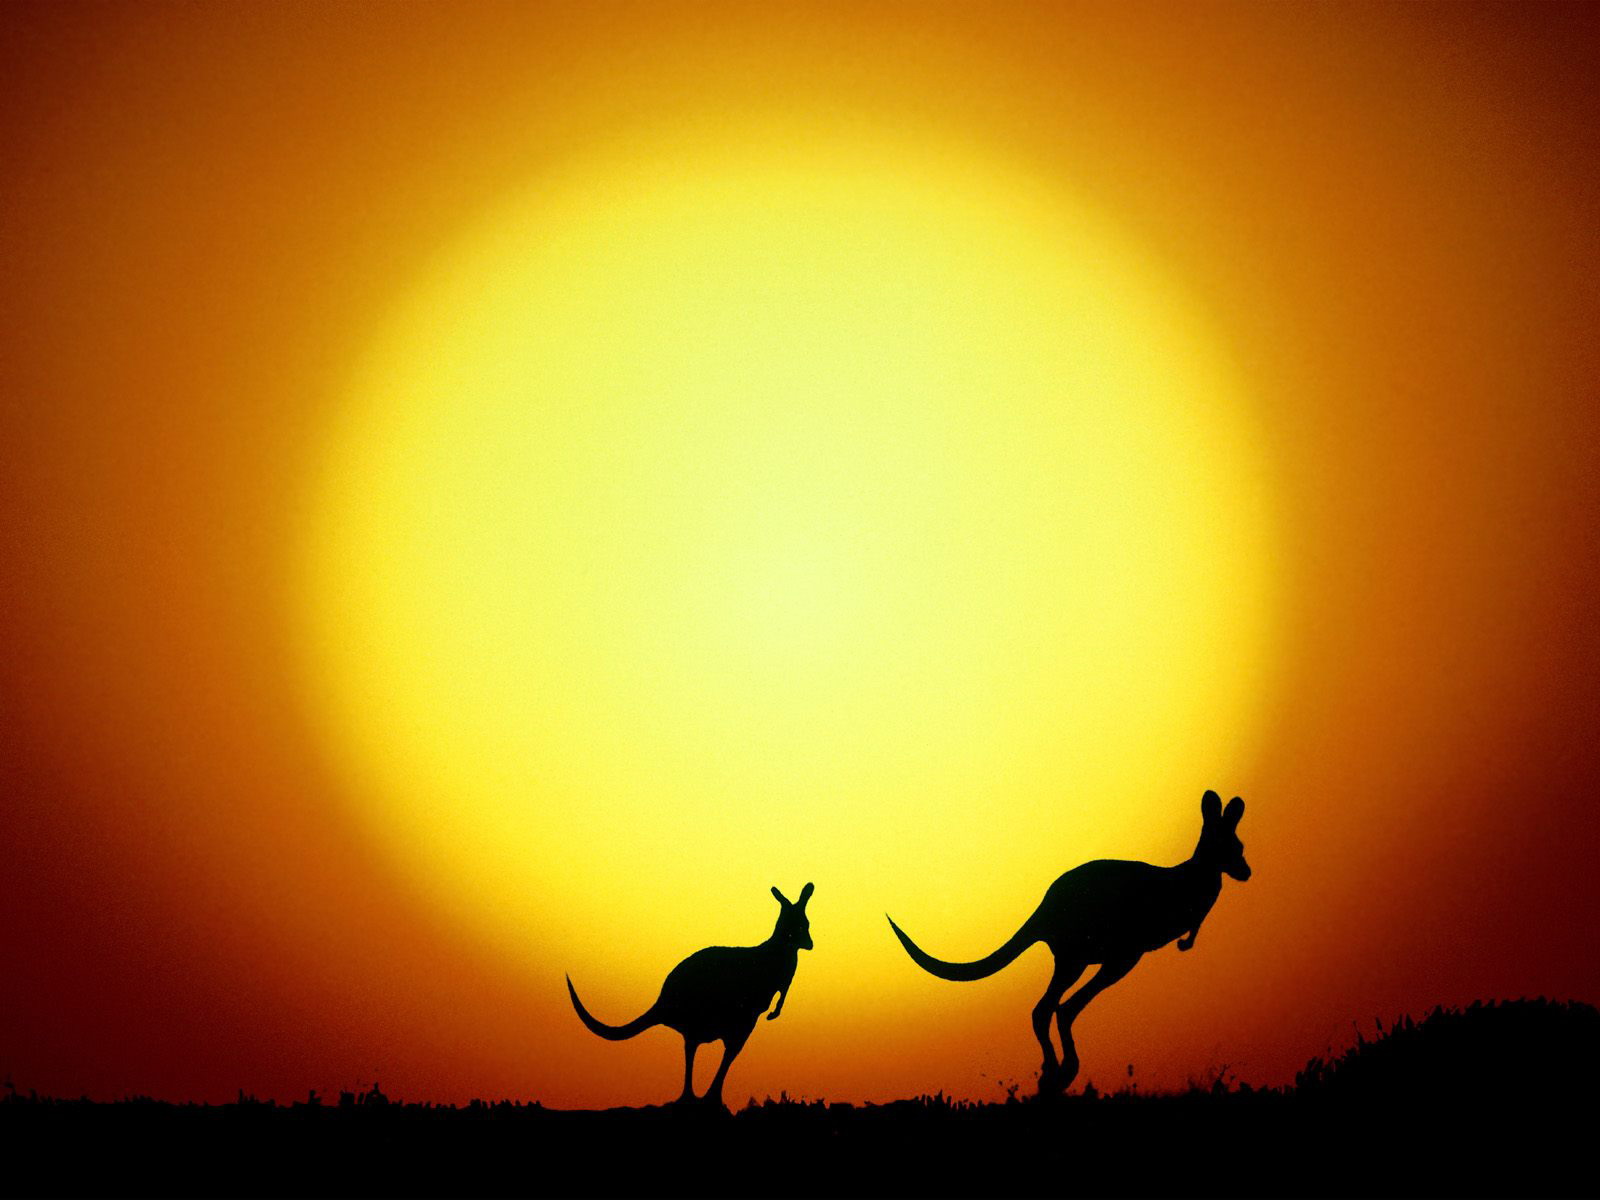 australien iphone wallpaper,himmel,tierwelt,silhouette,sonnenuntergang,landschaft